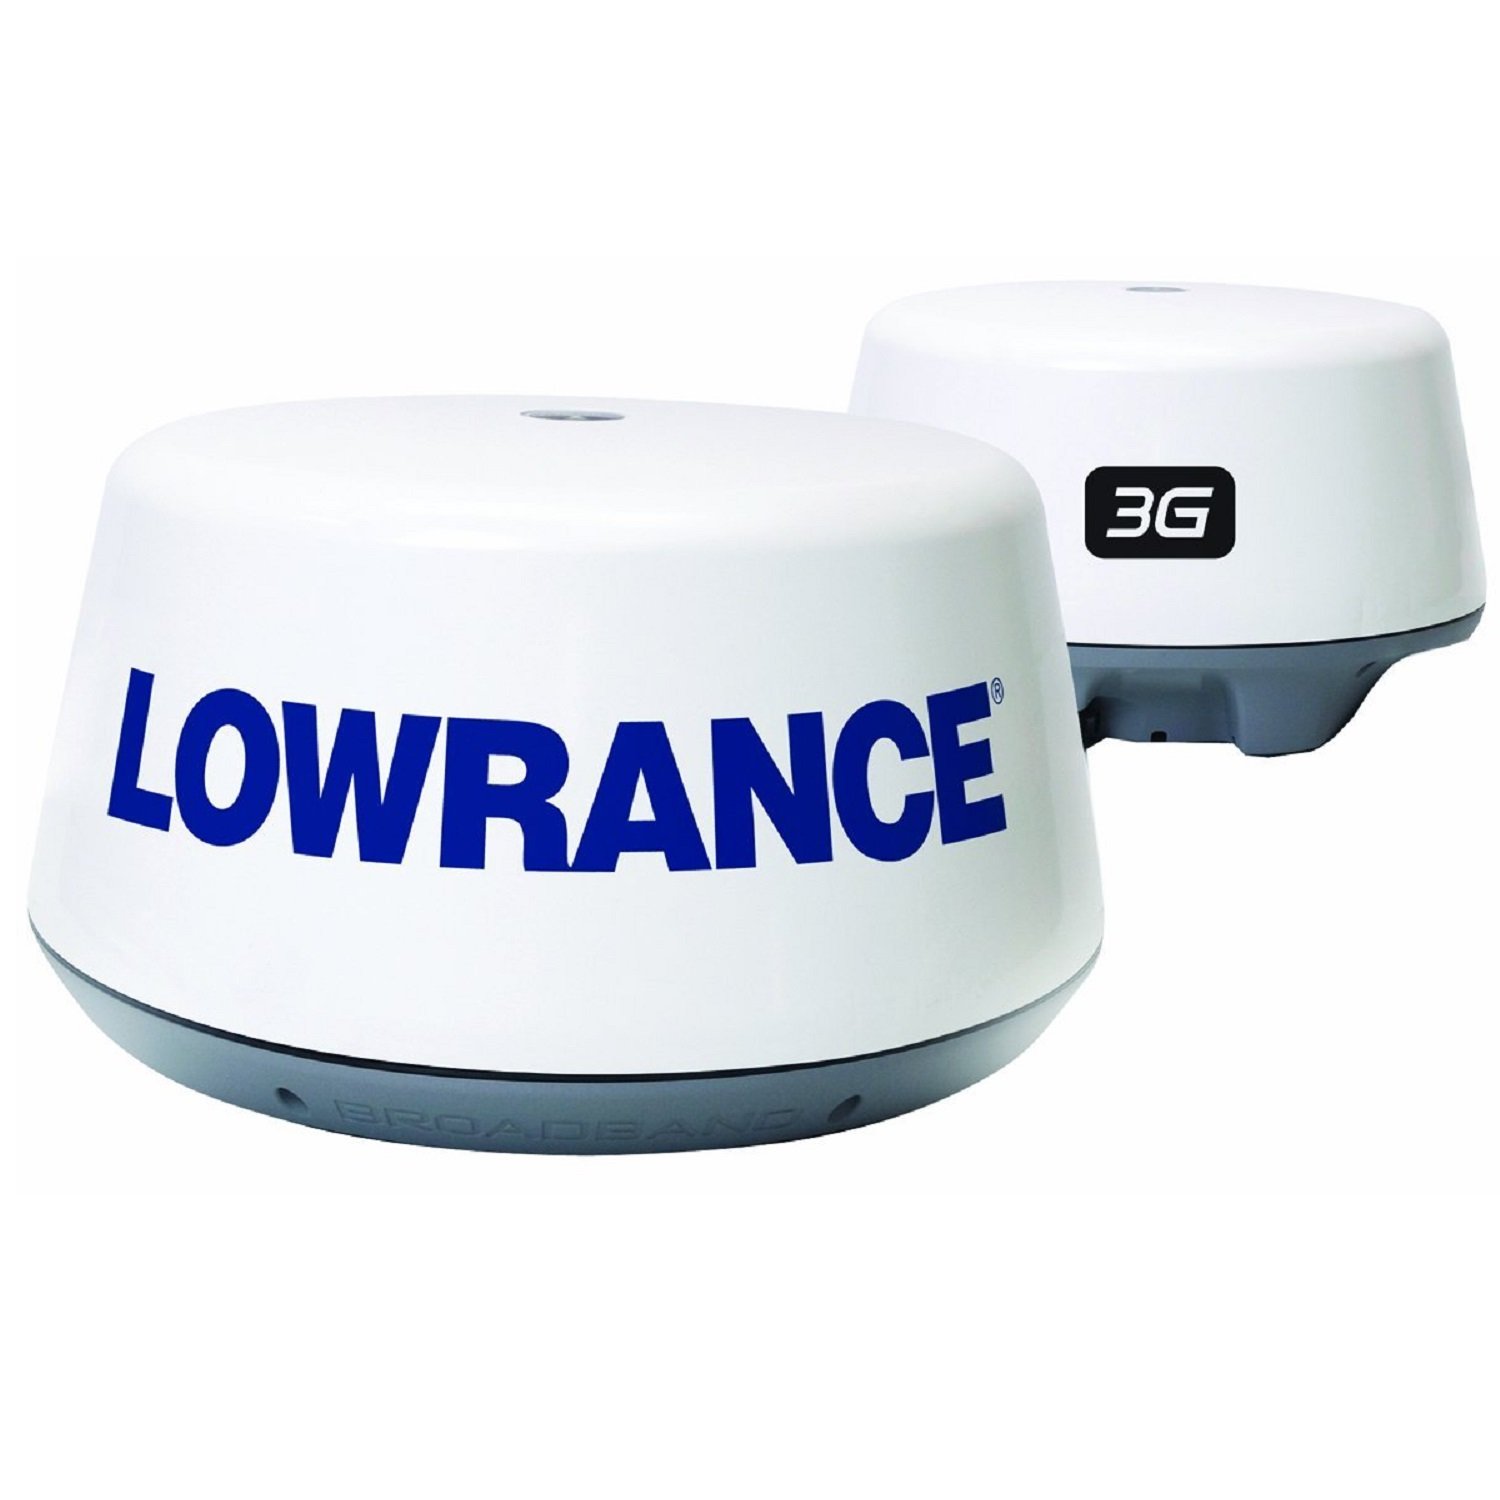 Lowrance 3G Broadband Radar